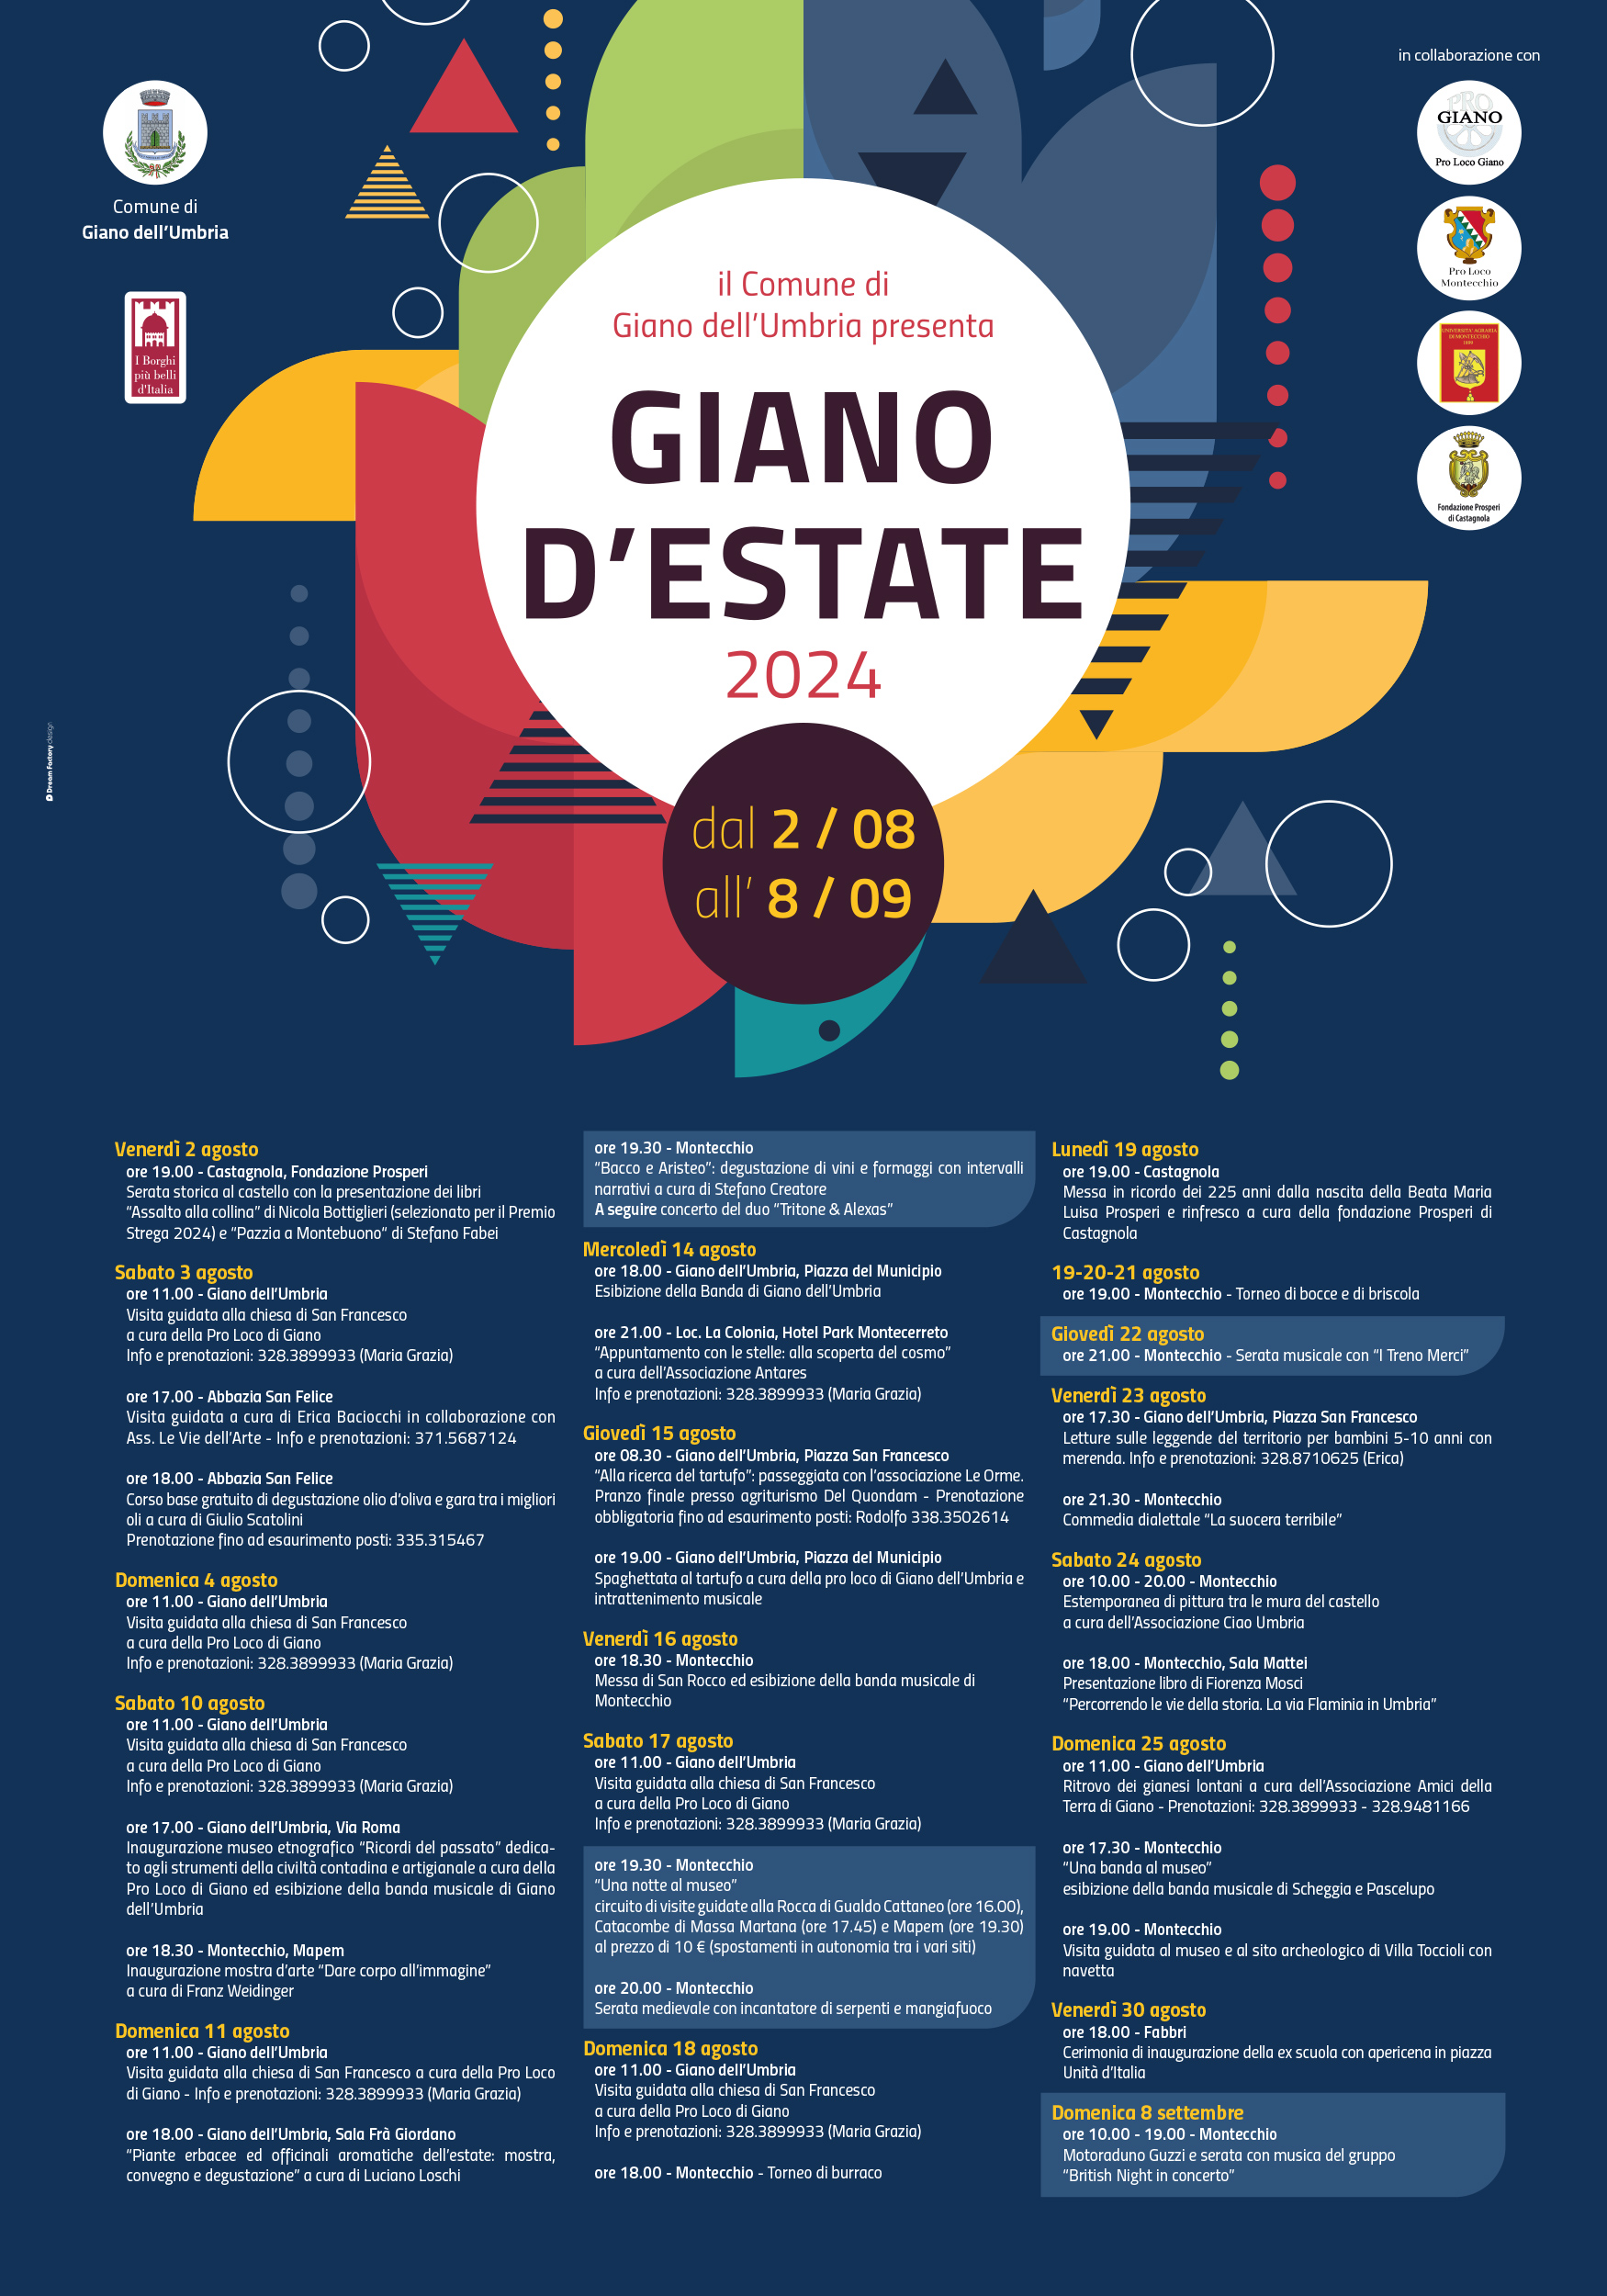 Giano d'Estate - Il programma degli eventi dell'edizione 2024